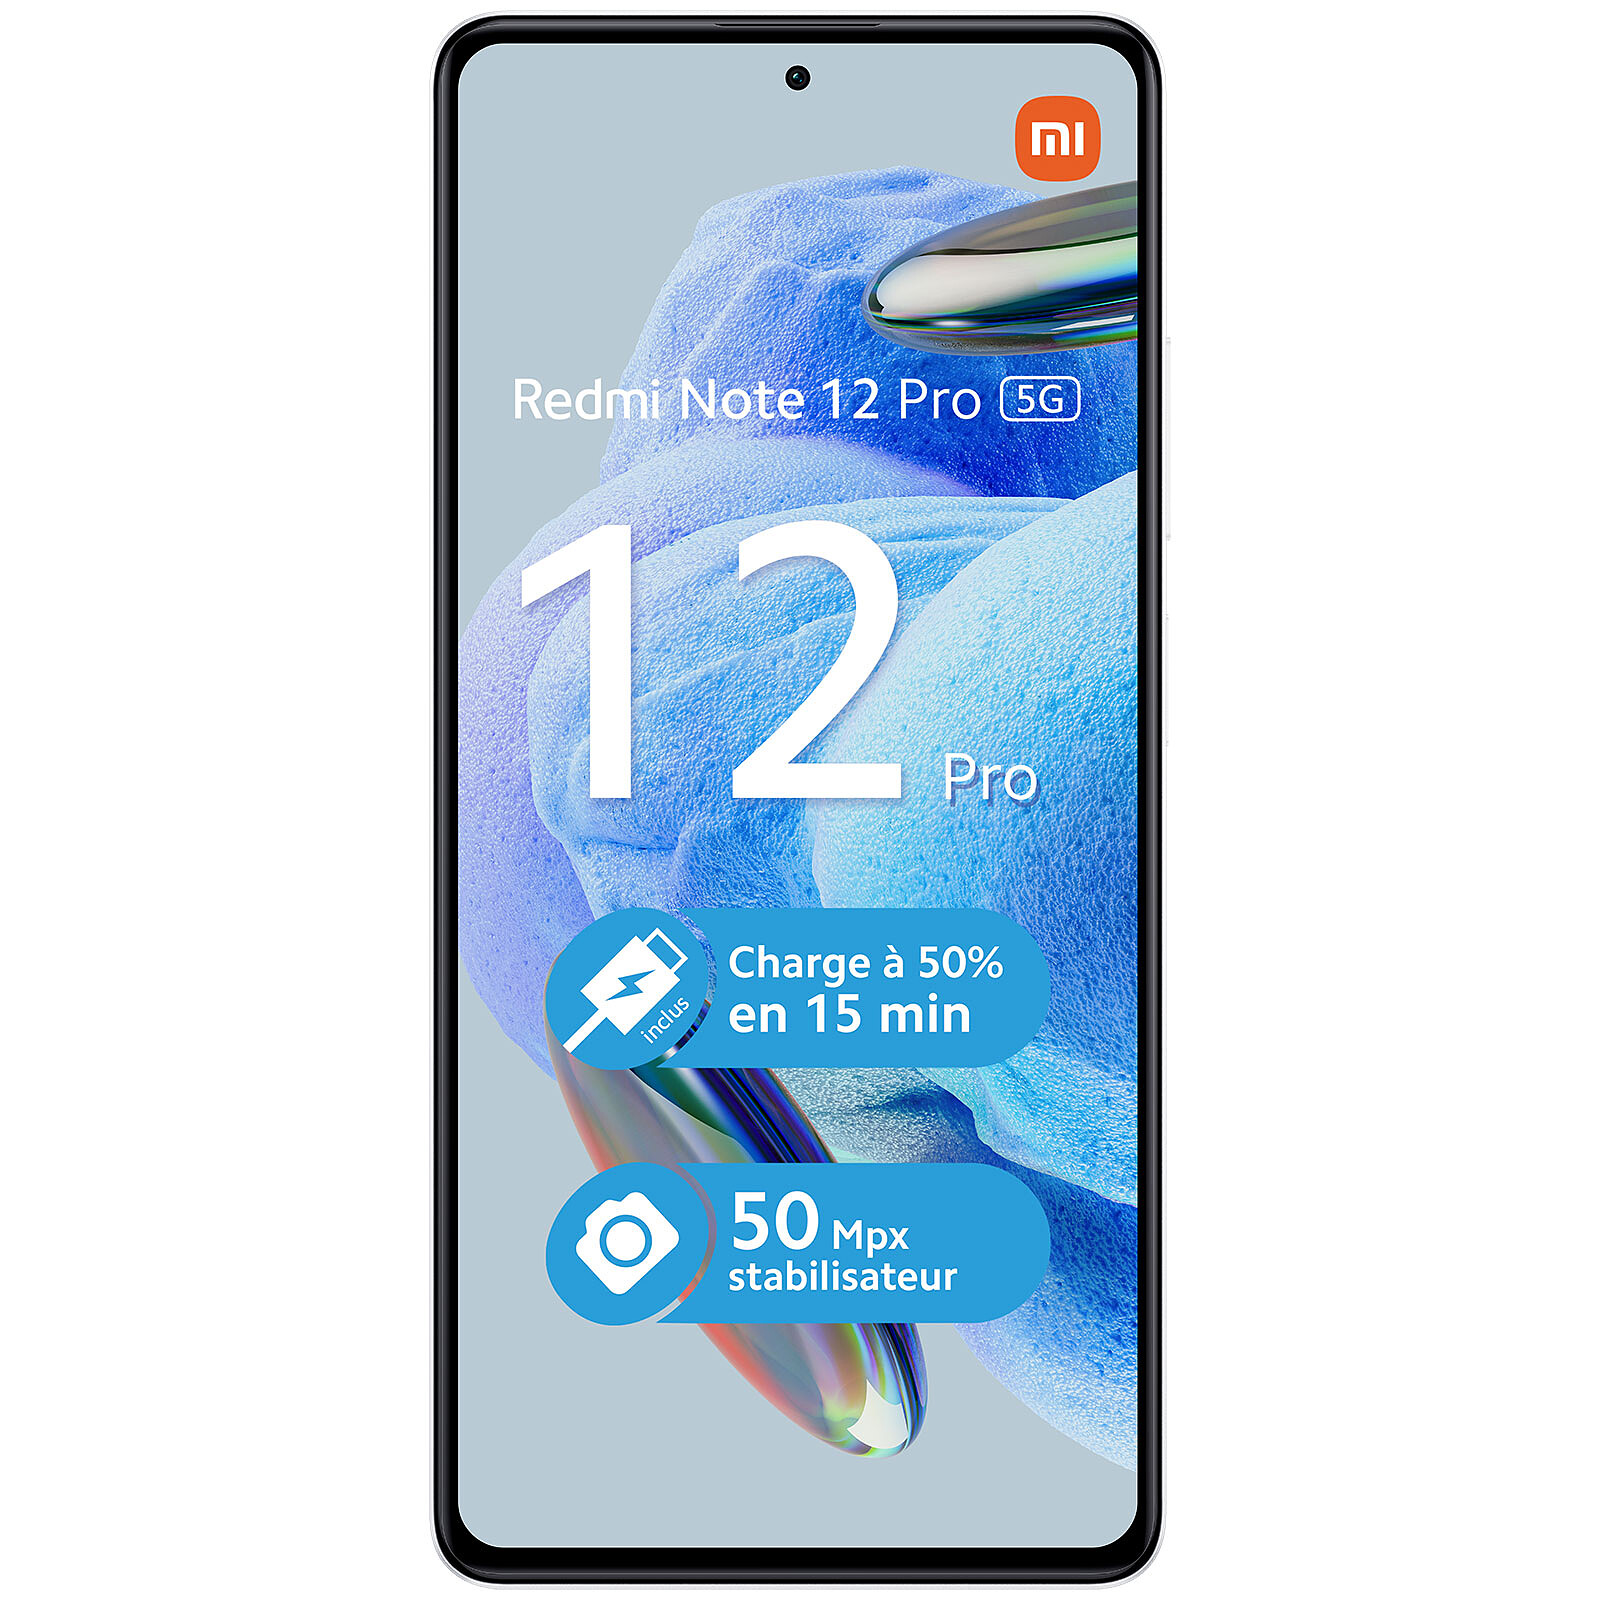 Xiaomi Redmi Note 12 Pro 5G (8GB + 256GB) Polar White Smartphone, Mobile